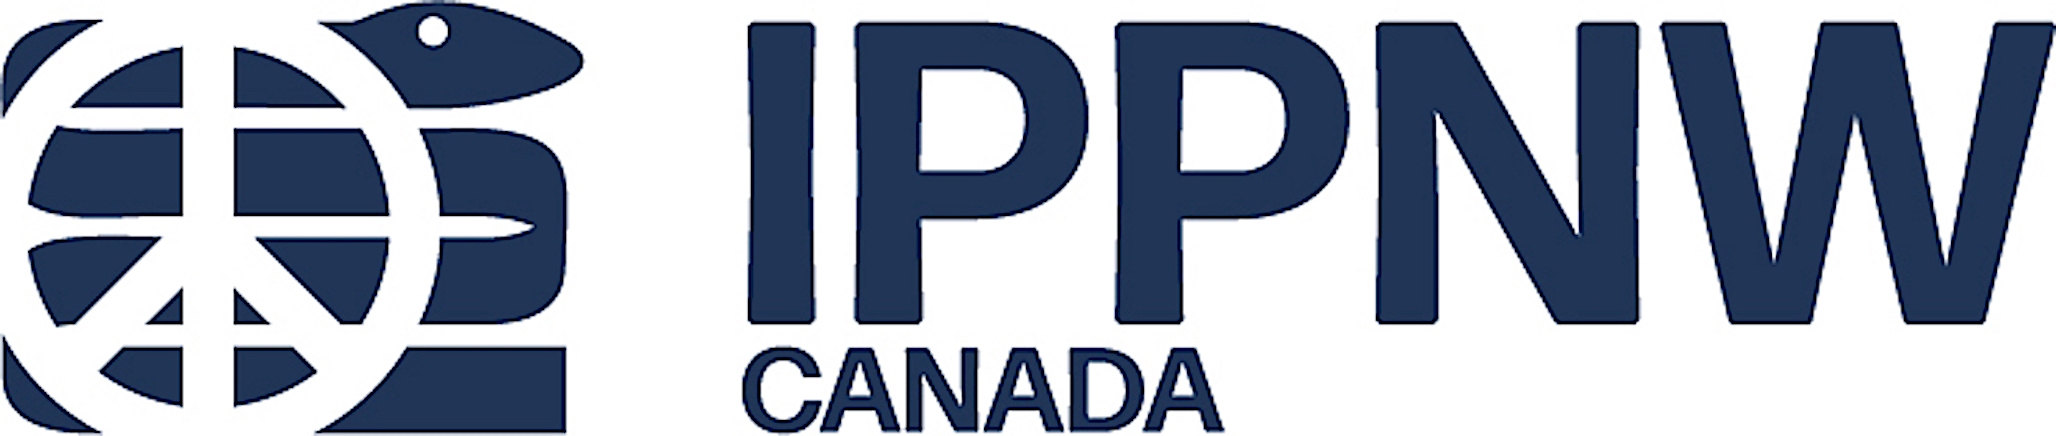 IPPNW Canada logo